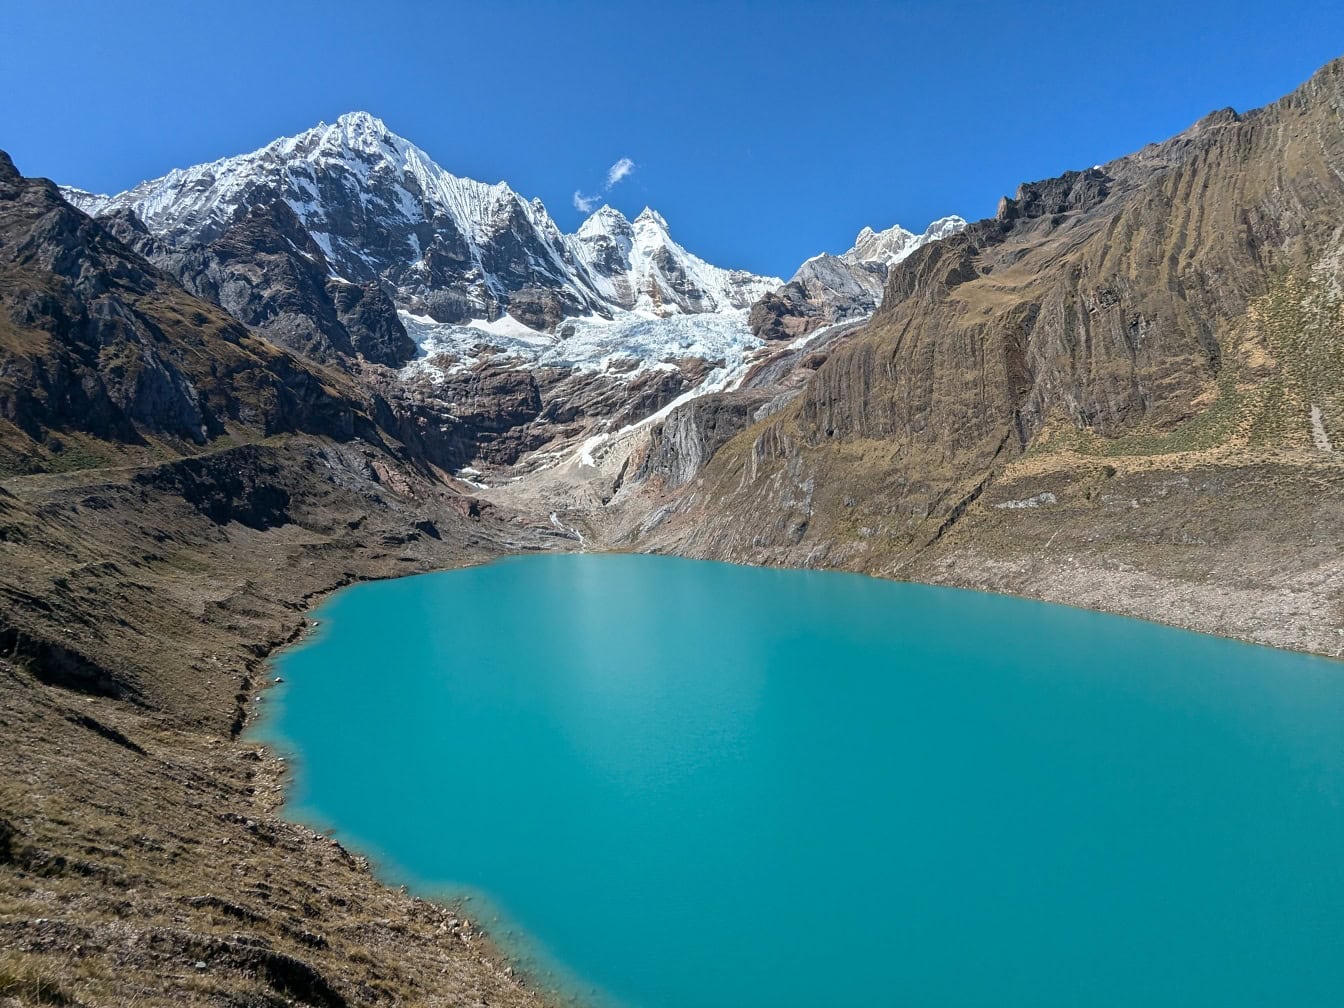 秘鲁安第斯山脉 Cordillera Huayhuash 山脉自然公园内绿松石 Llanguanco 湖的美景